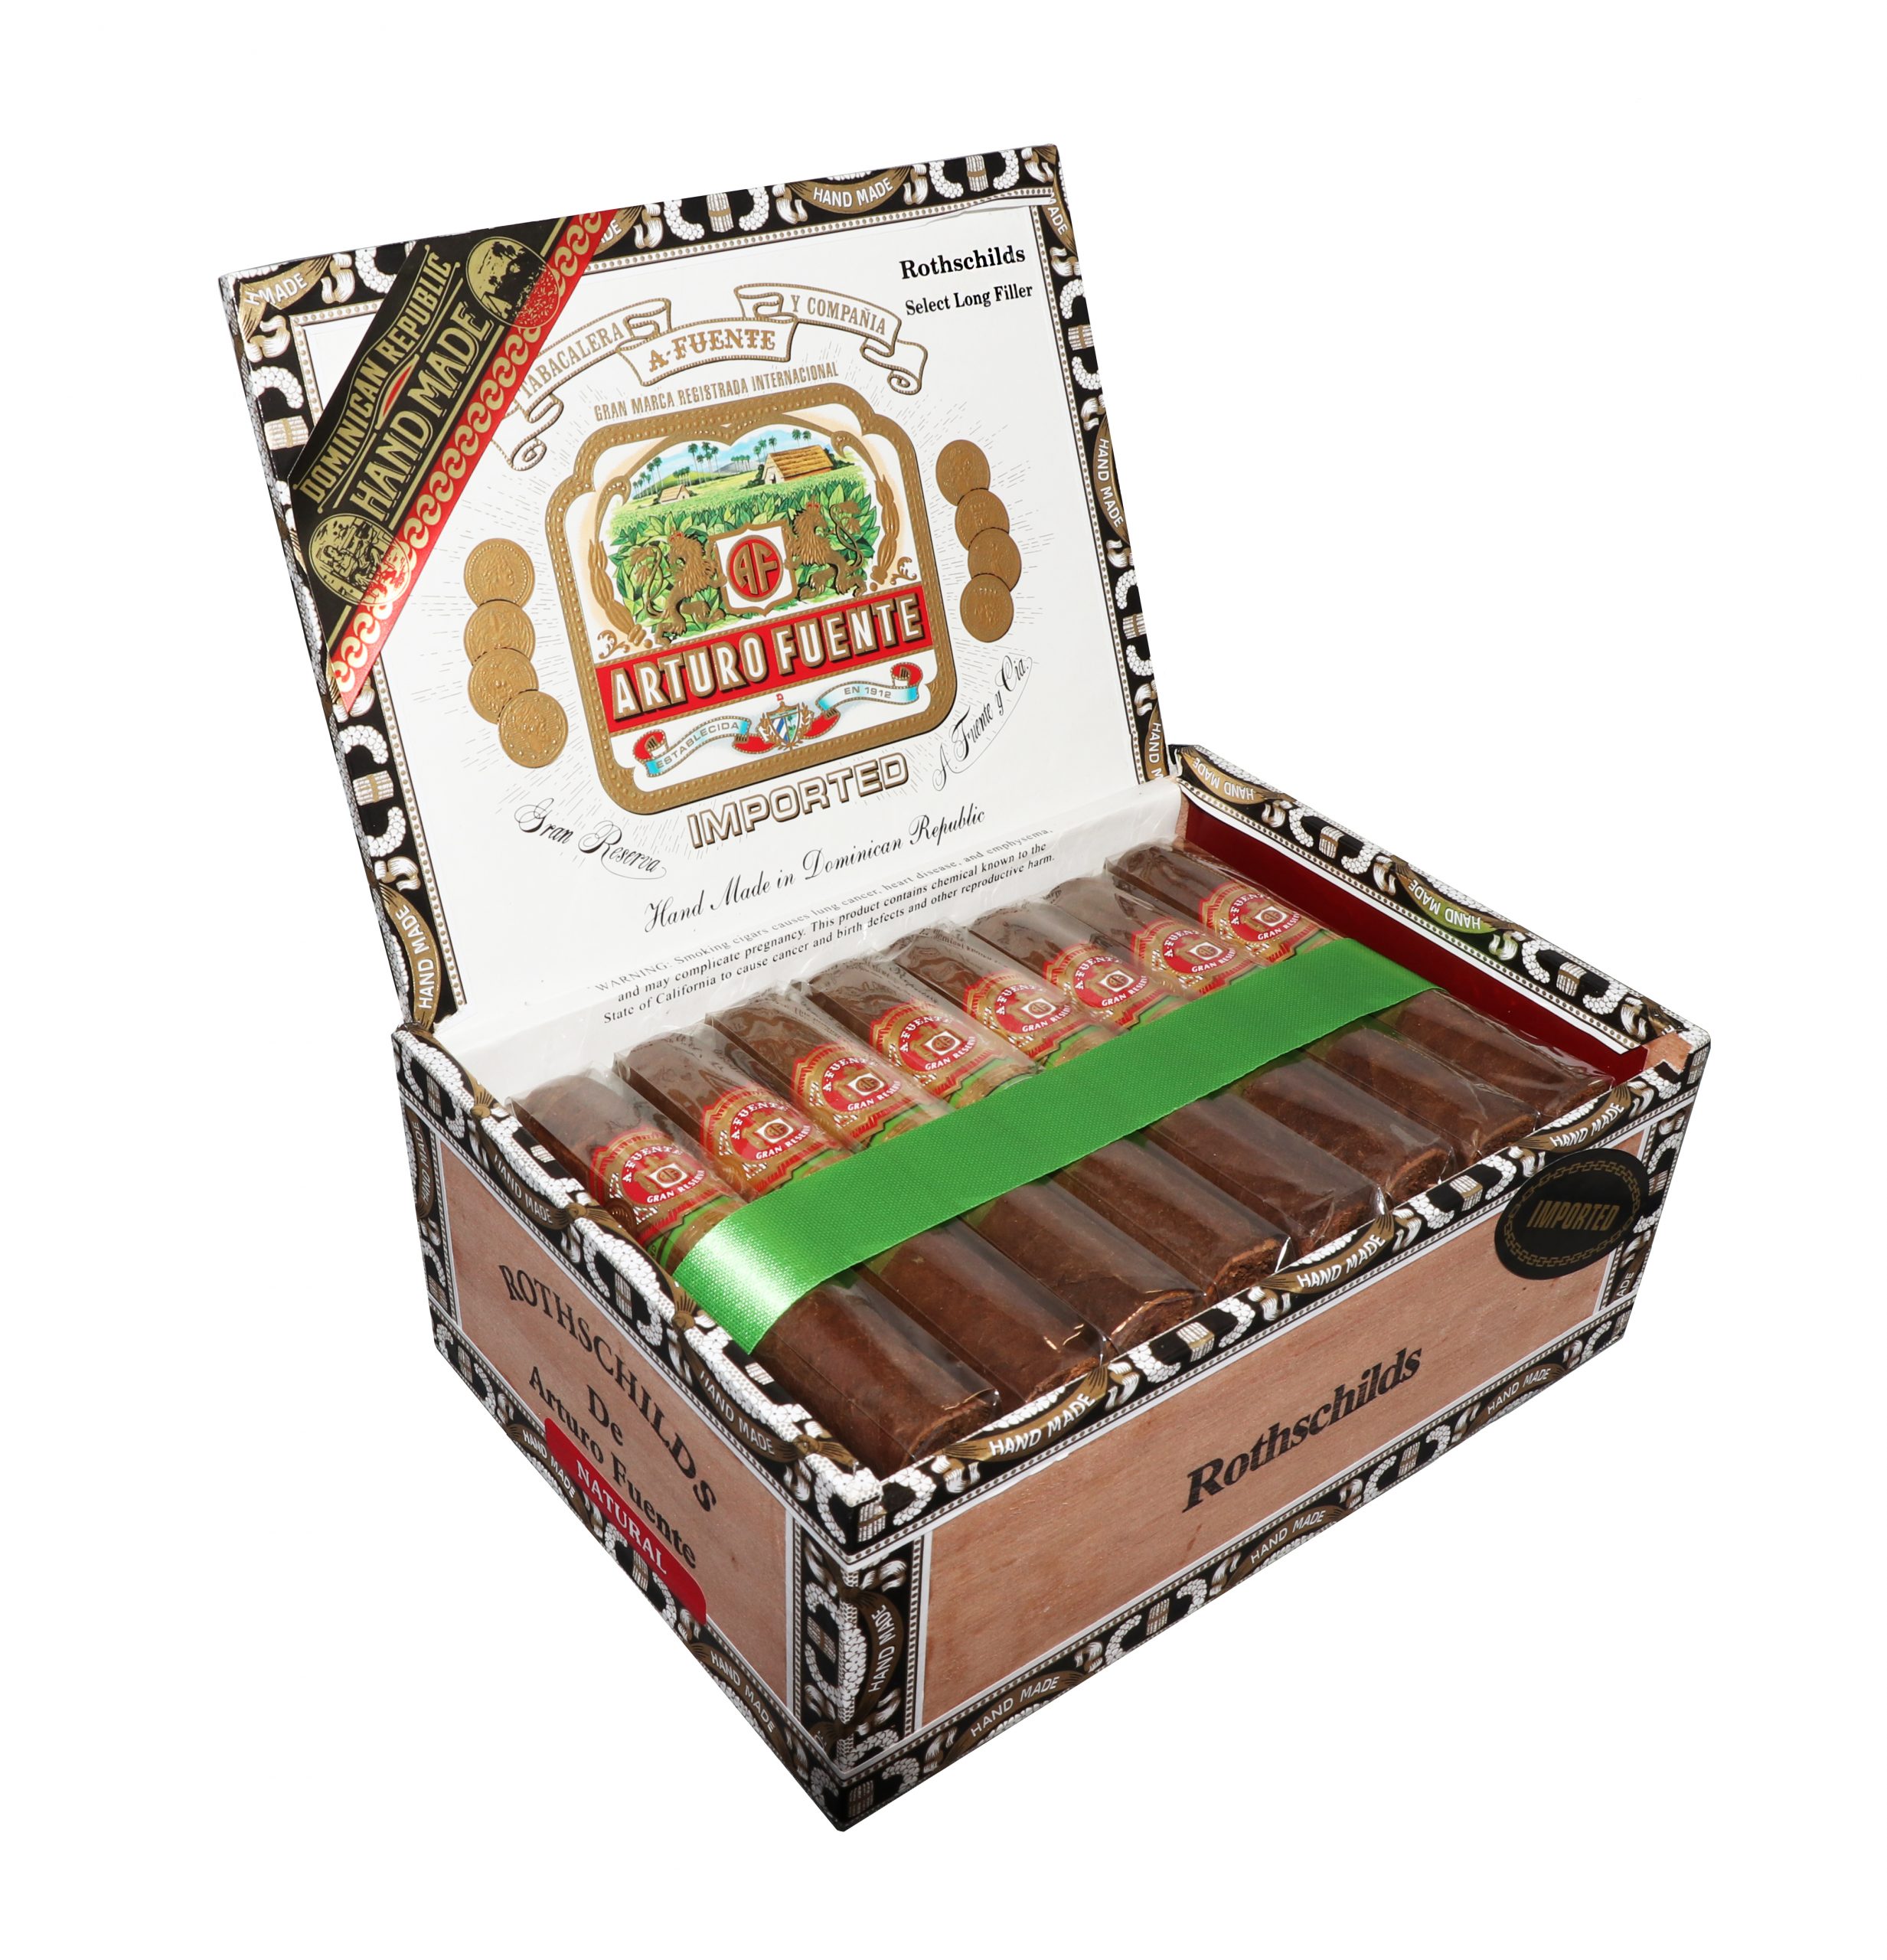 Open box of 25 count Arturo Fuente Gran Reserva Rothschild Natural cigars